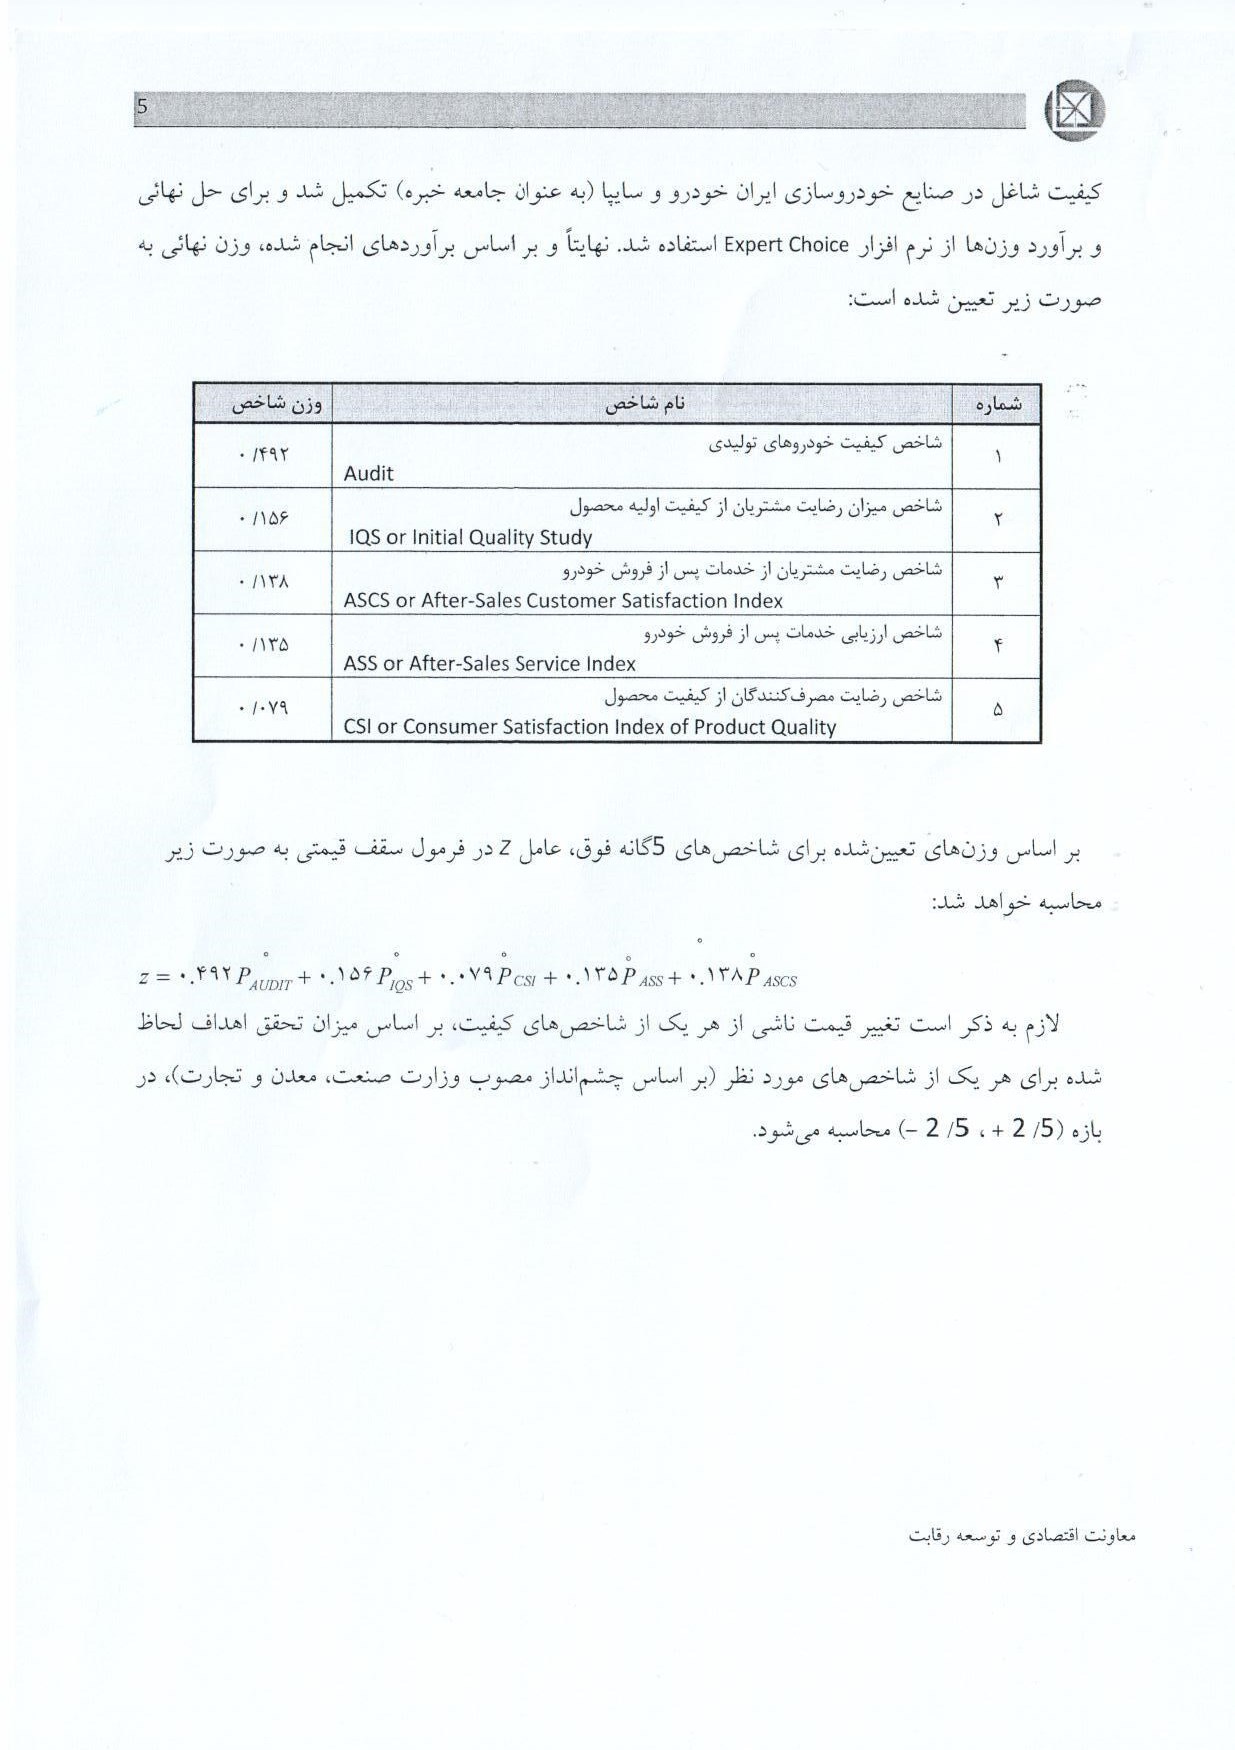 شورای رقابت دستورالعمل تعیین قیمت خودرو را تشریح کرد + سند